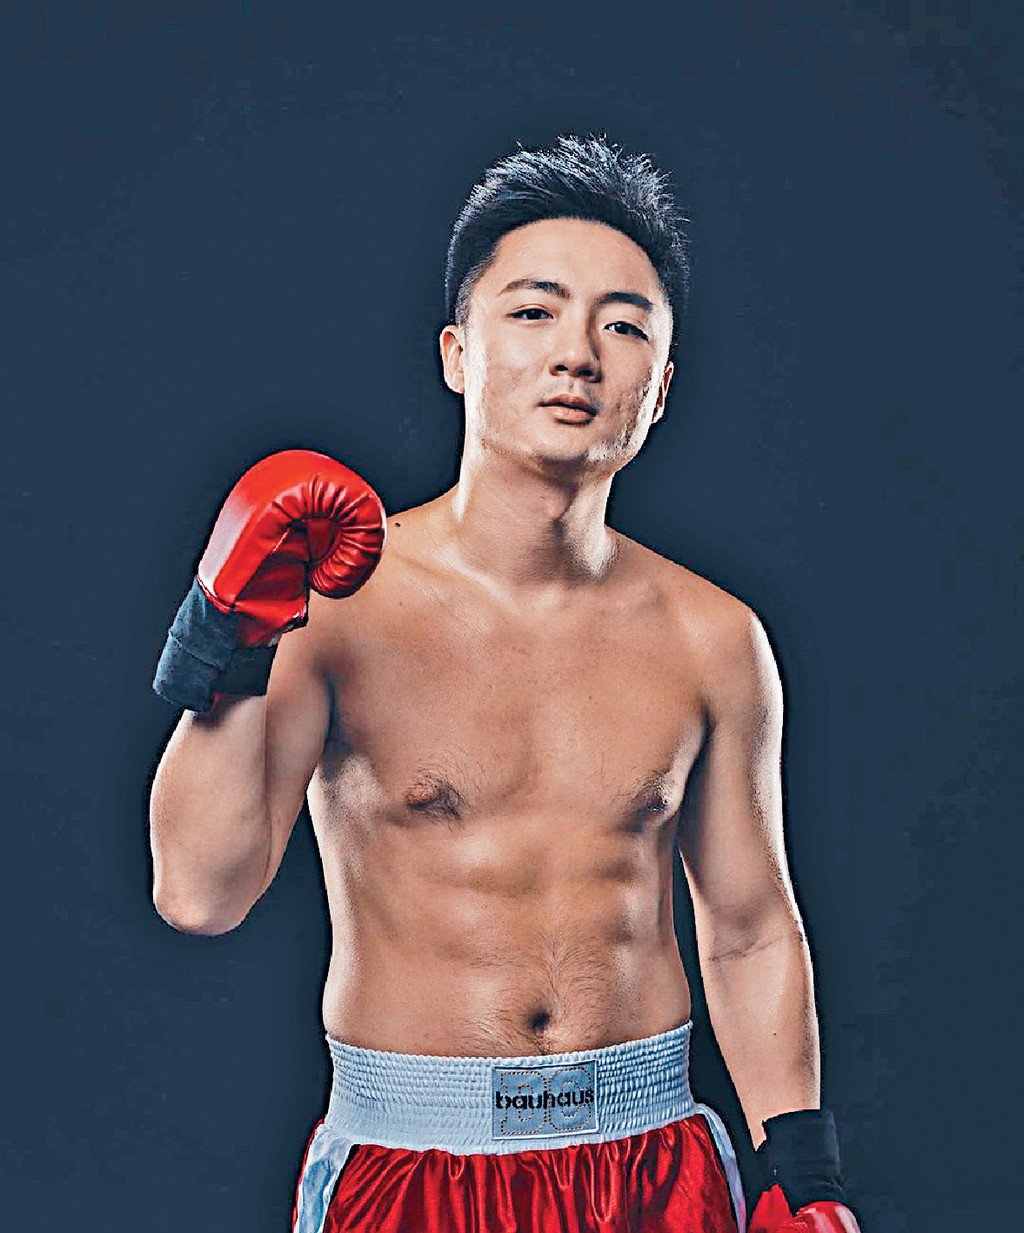 锺培生于2021年9月与林作举行世纪擂台战。